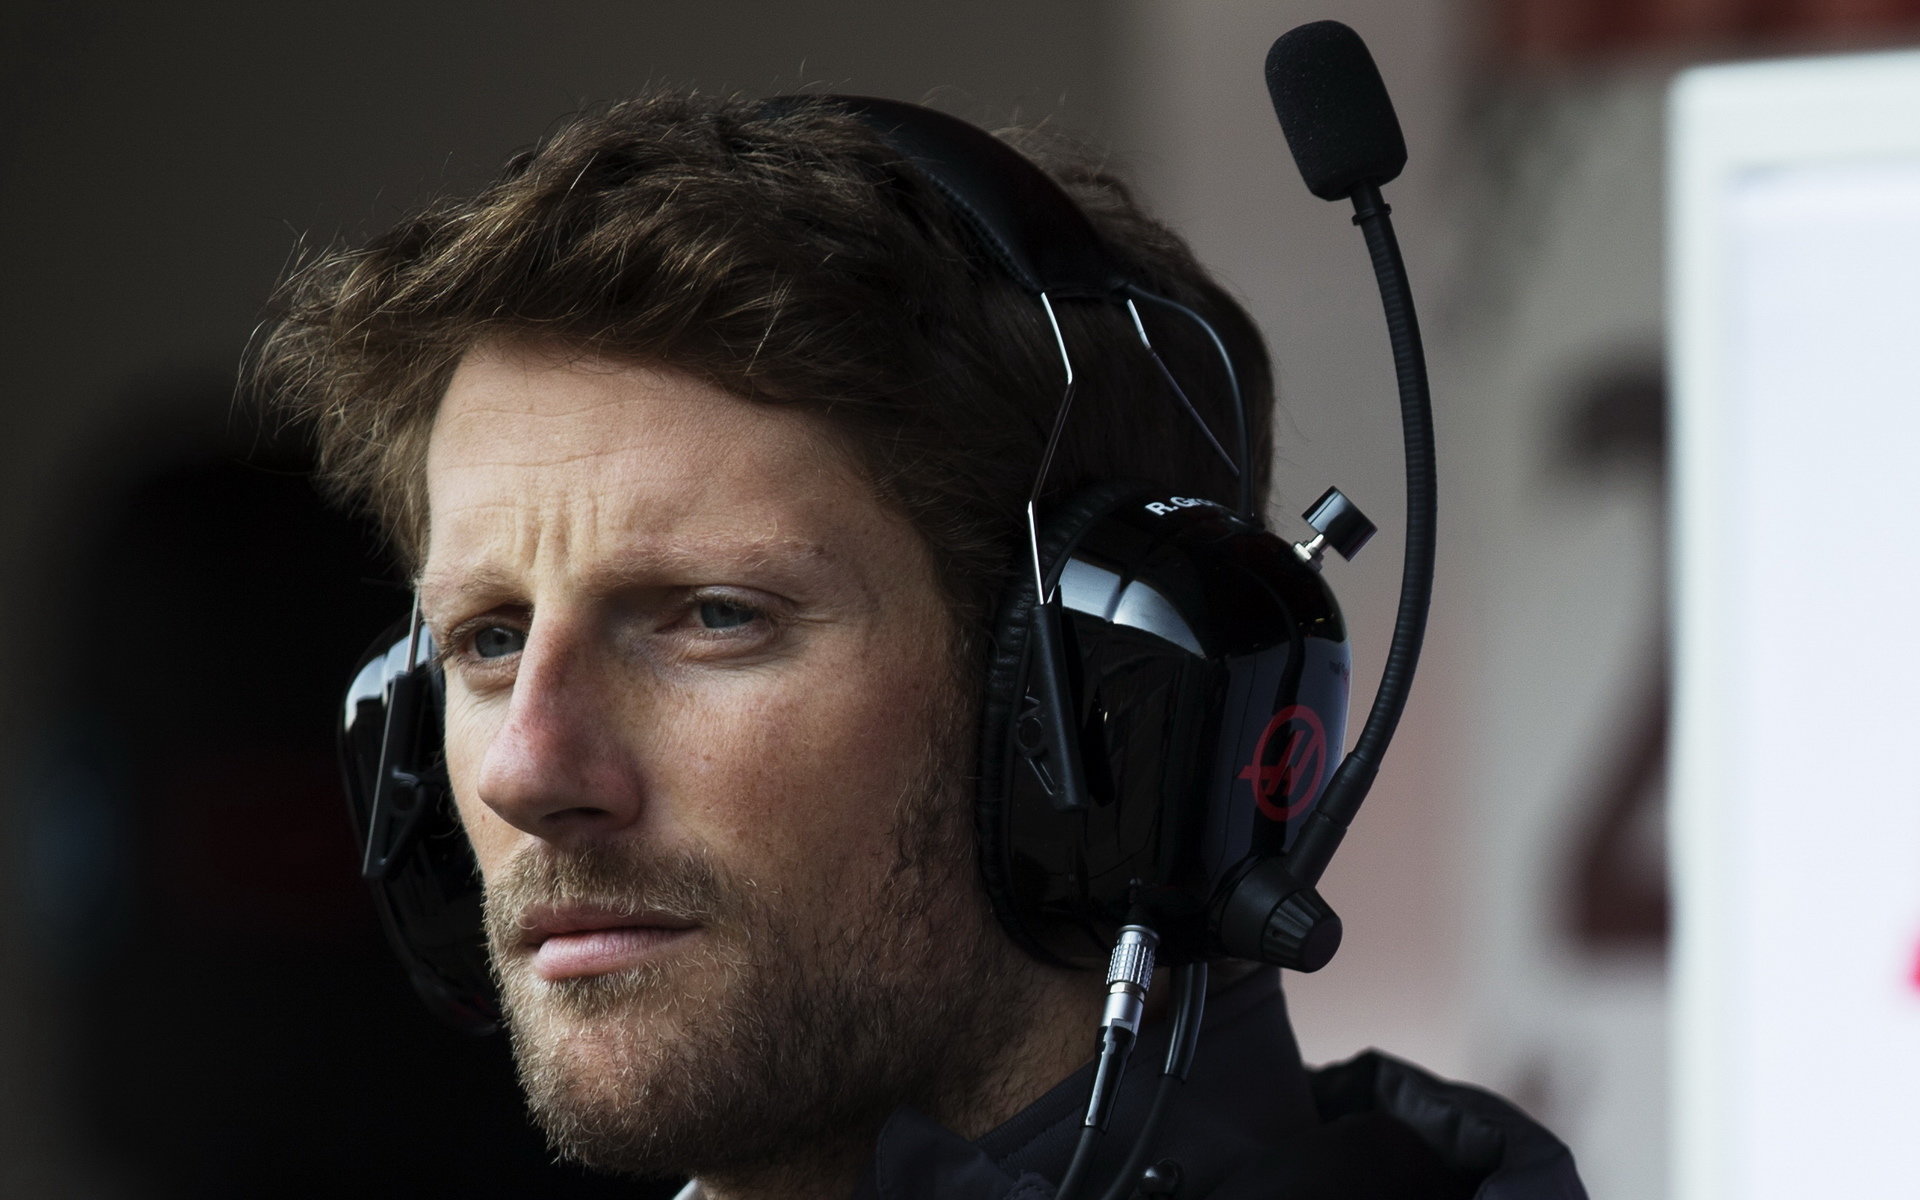 Romain Grosjean s Haasem během testů v Barceloně